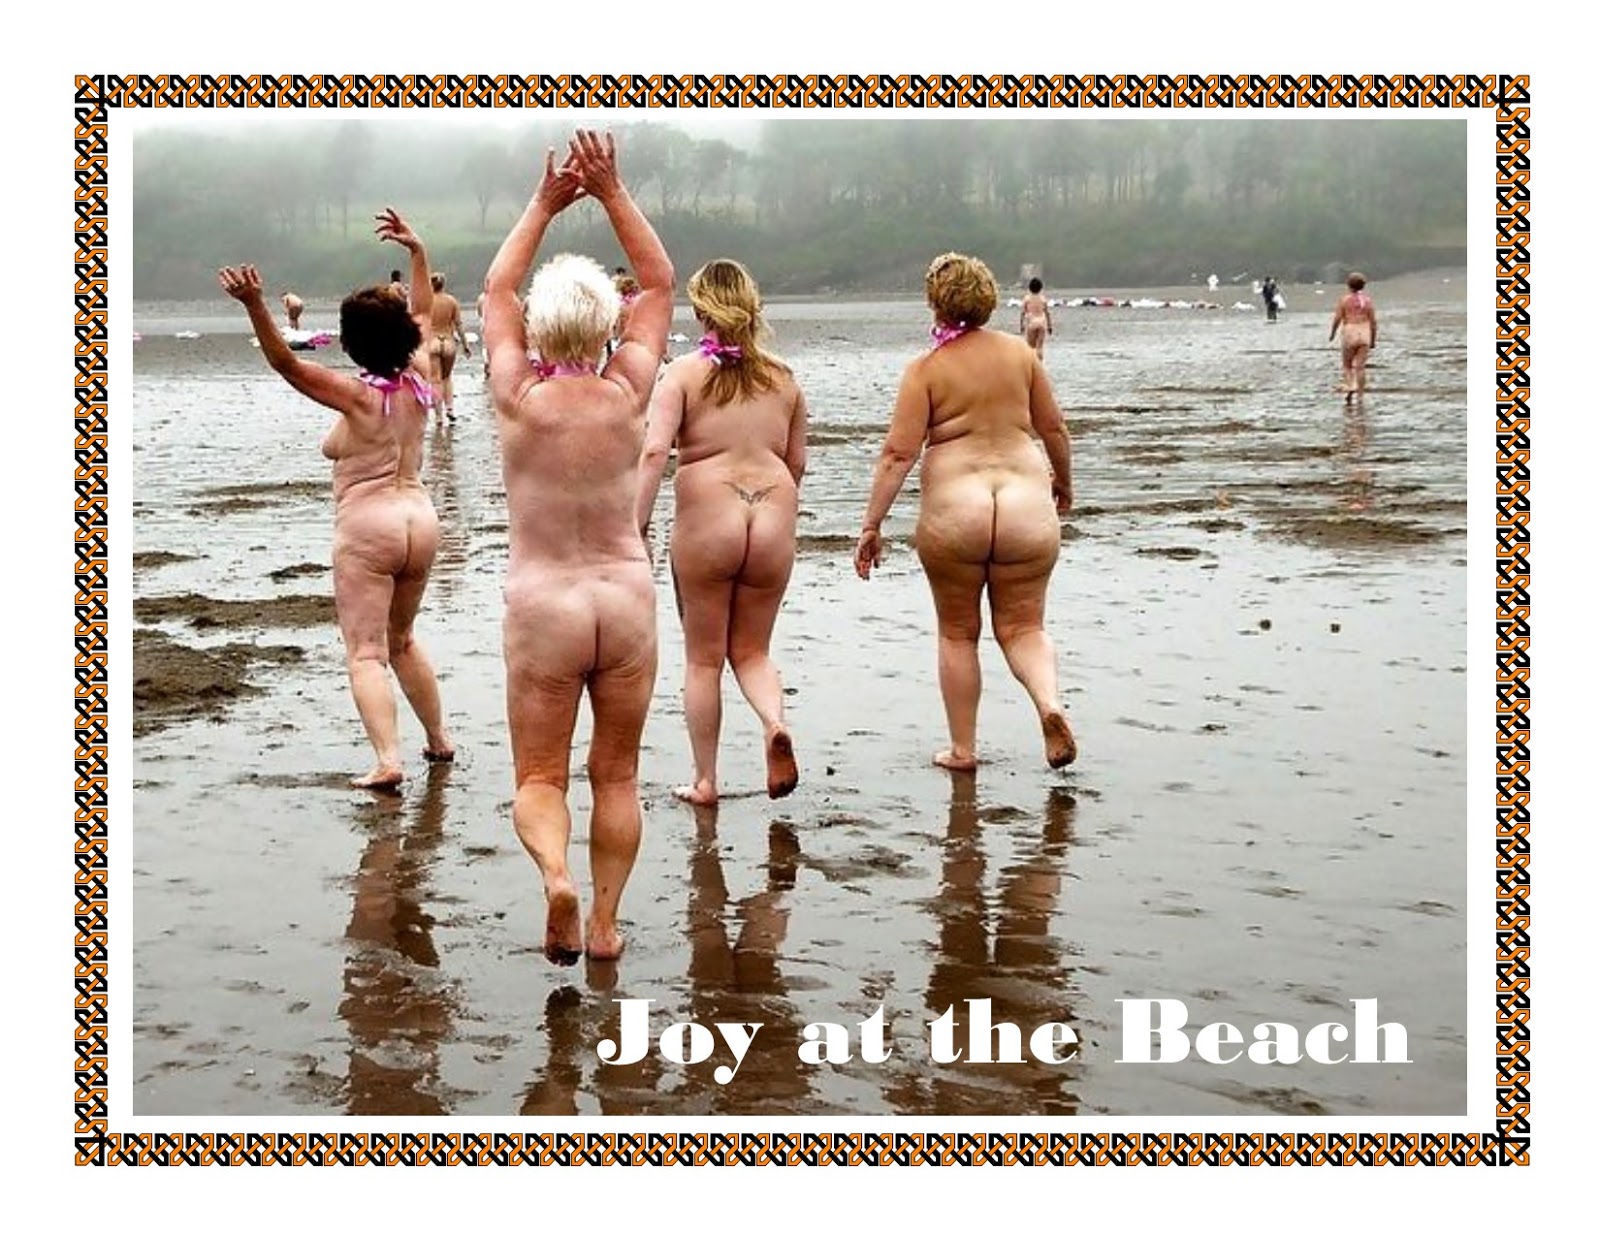 купание голыми на пляже фото 36